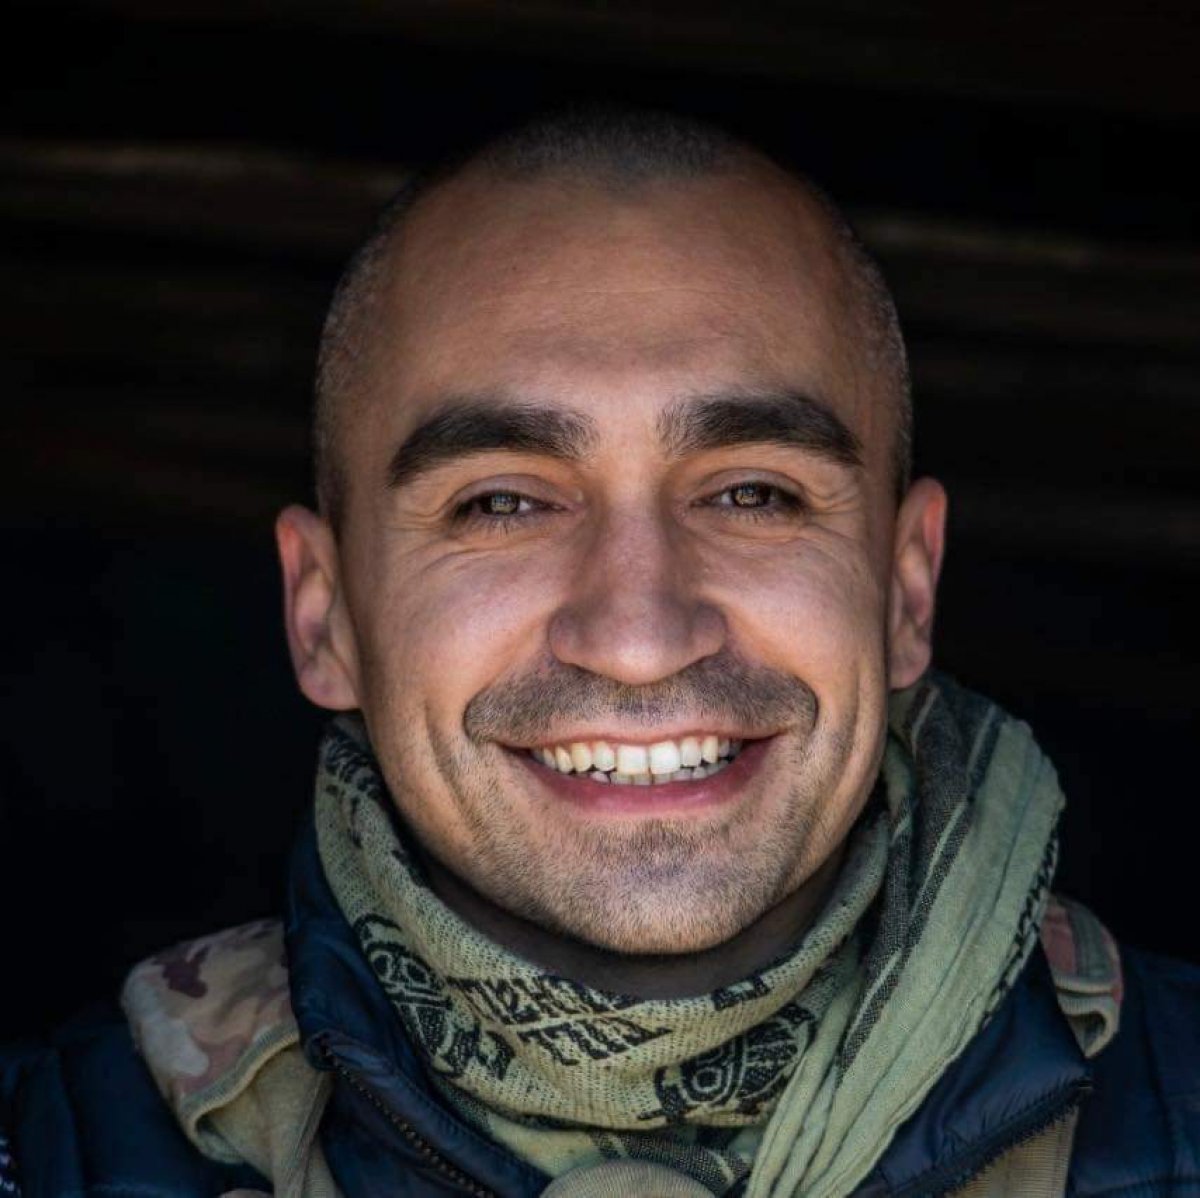 Ukrayna ordusuna katılan gazeteci çatışmada öldü